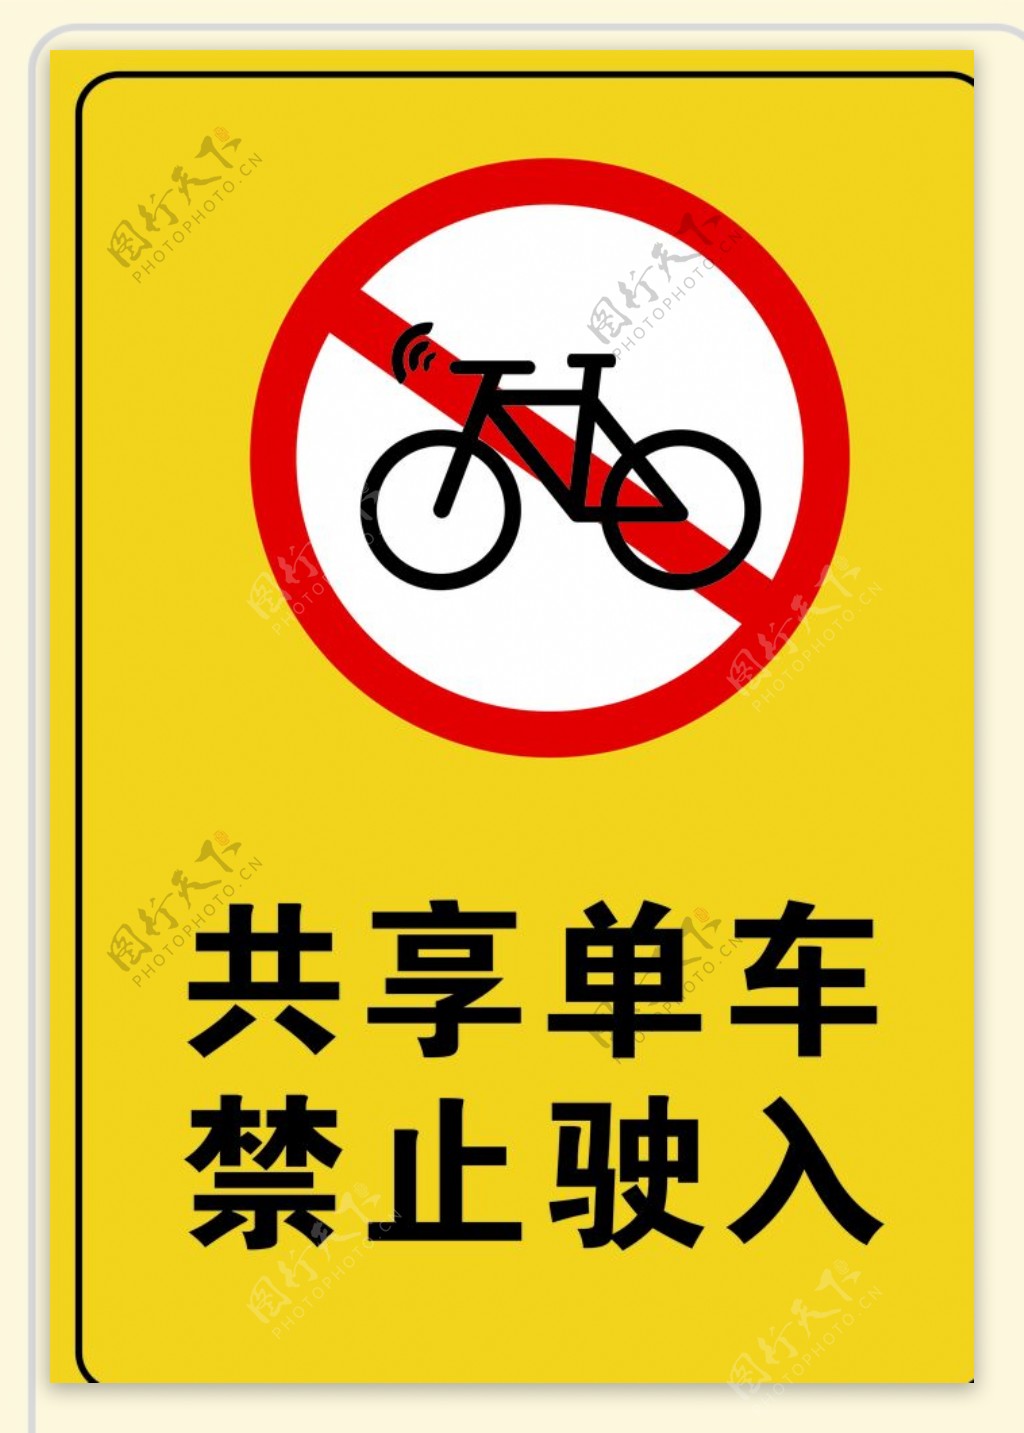 共享单车禁止驶入